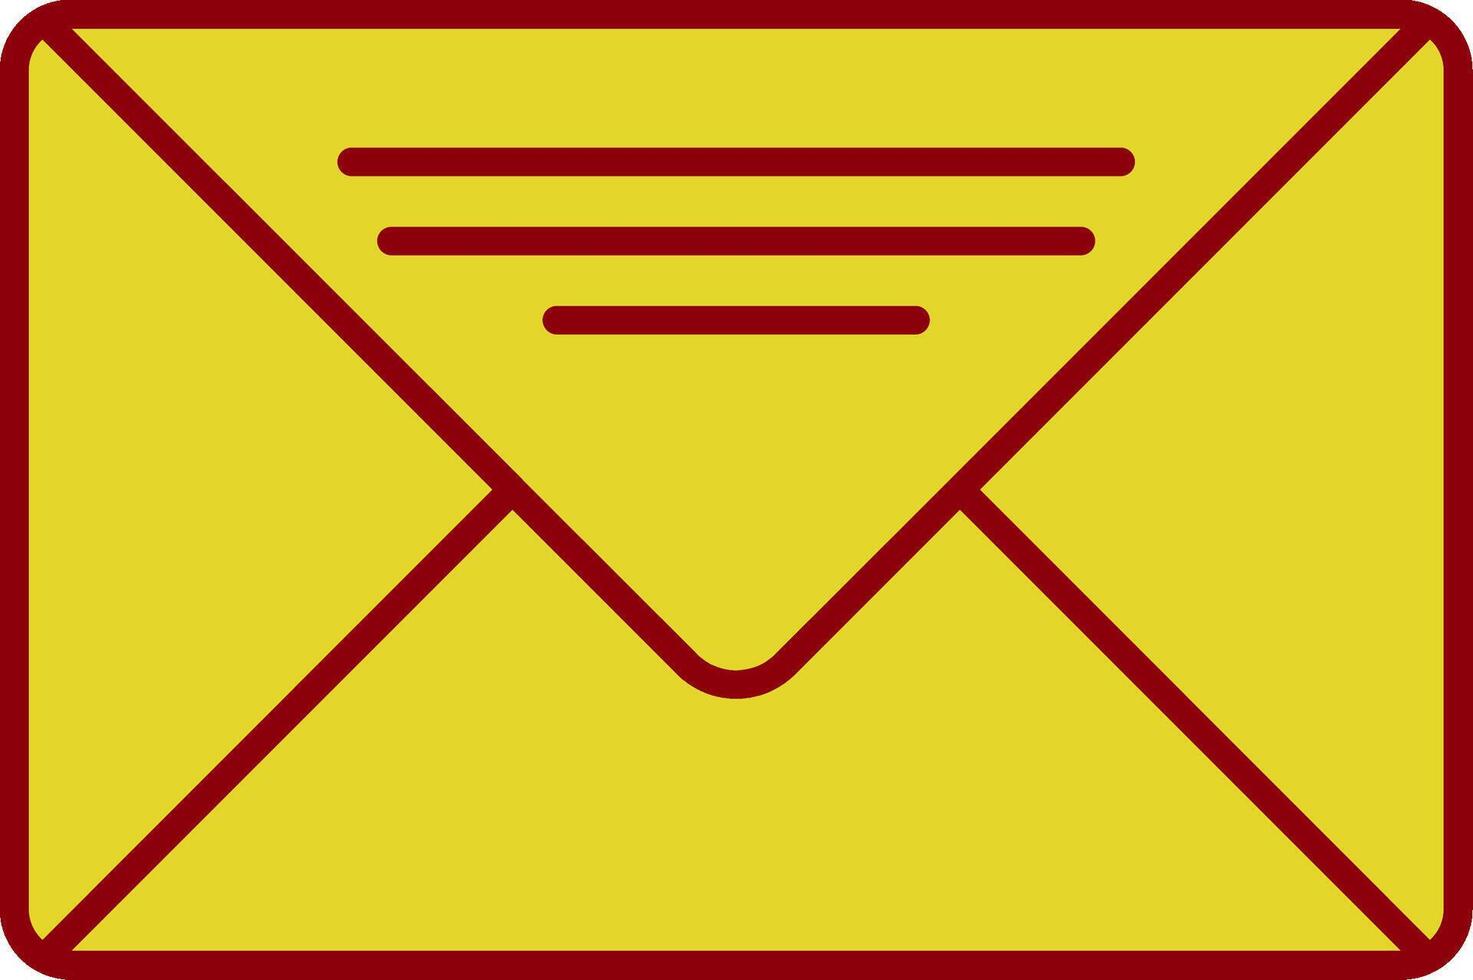 icône de deux couleurs de ligne de courrier électronique vecteur